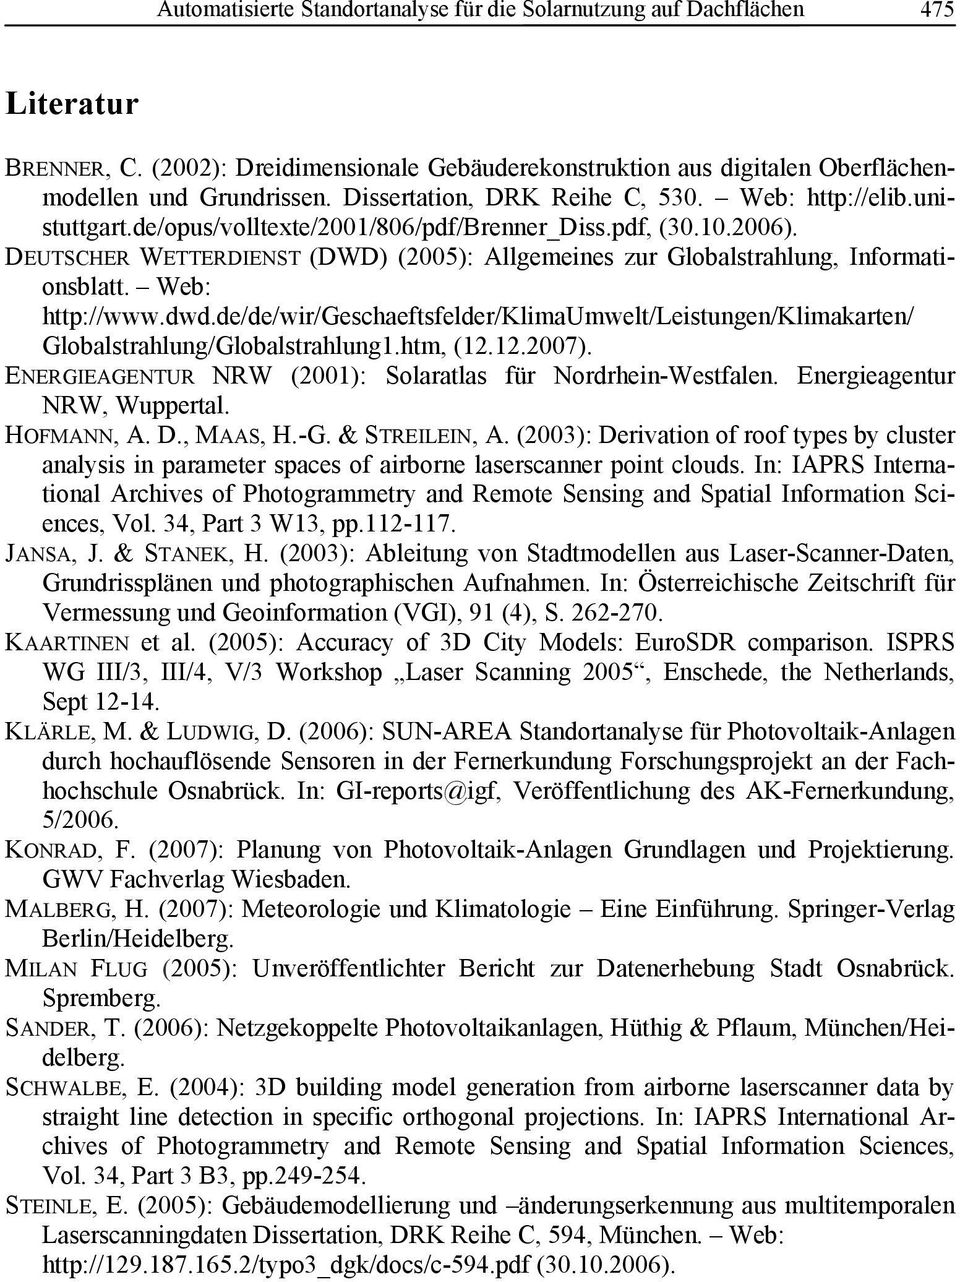 DEUTSCHER WETTERDIENST (DWD) (2005): Allgemeines zur Globalstrahlung, Informationsblatt. Web: http://www.dwd.